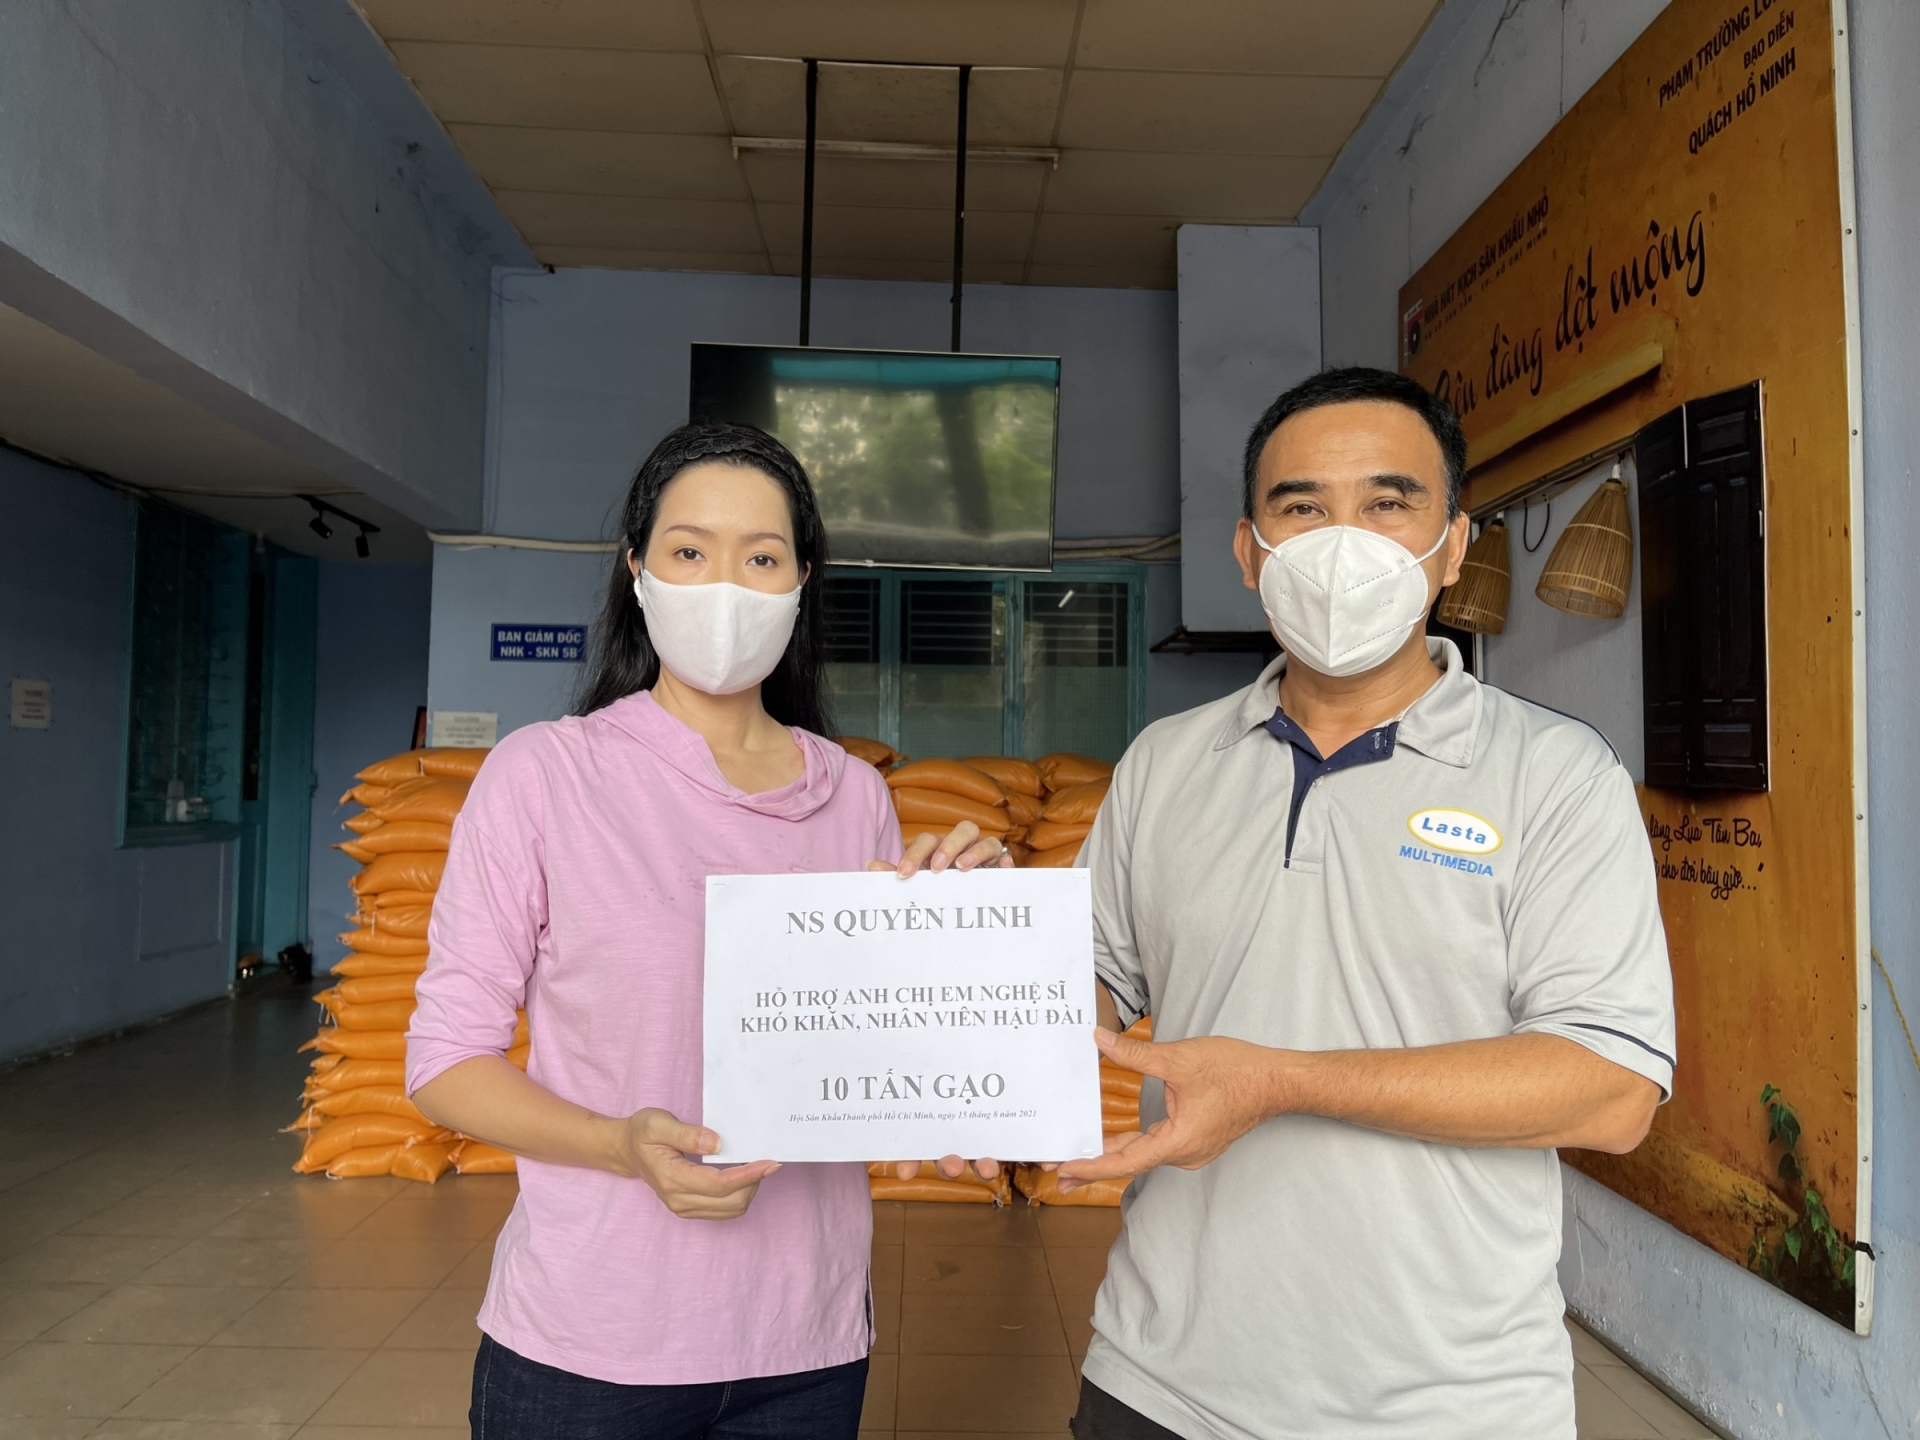 Ngoài 10 tấn gạo, MC Quyền Linh cũng thay mặt nhà hảo tâm, gửi Á hậu Trịnh Kim Chi 100 triệu đồng để nhờ cô chuyển đến những hoàn cảnh khó khăn